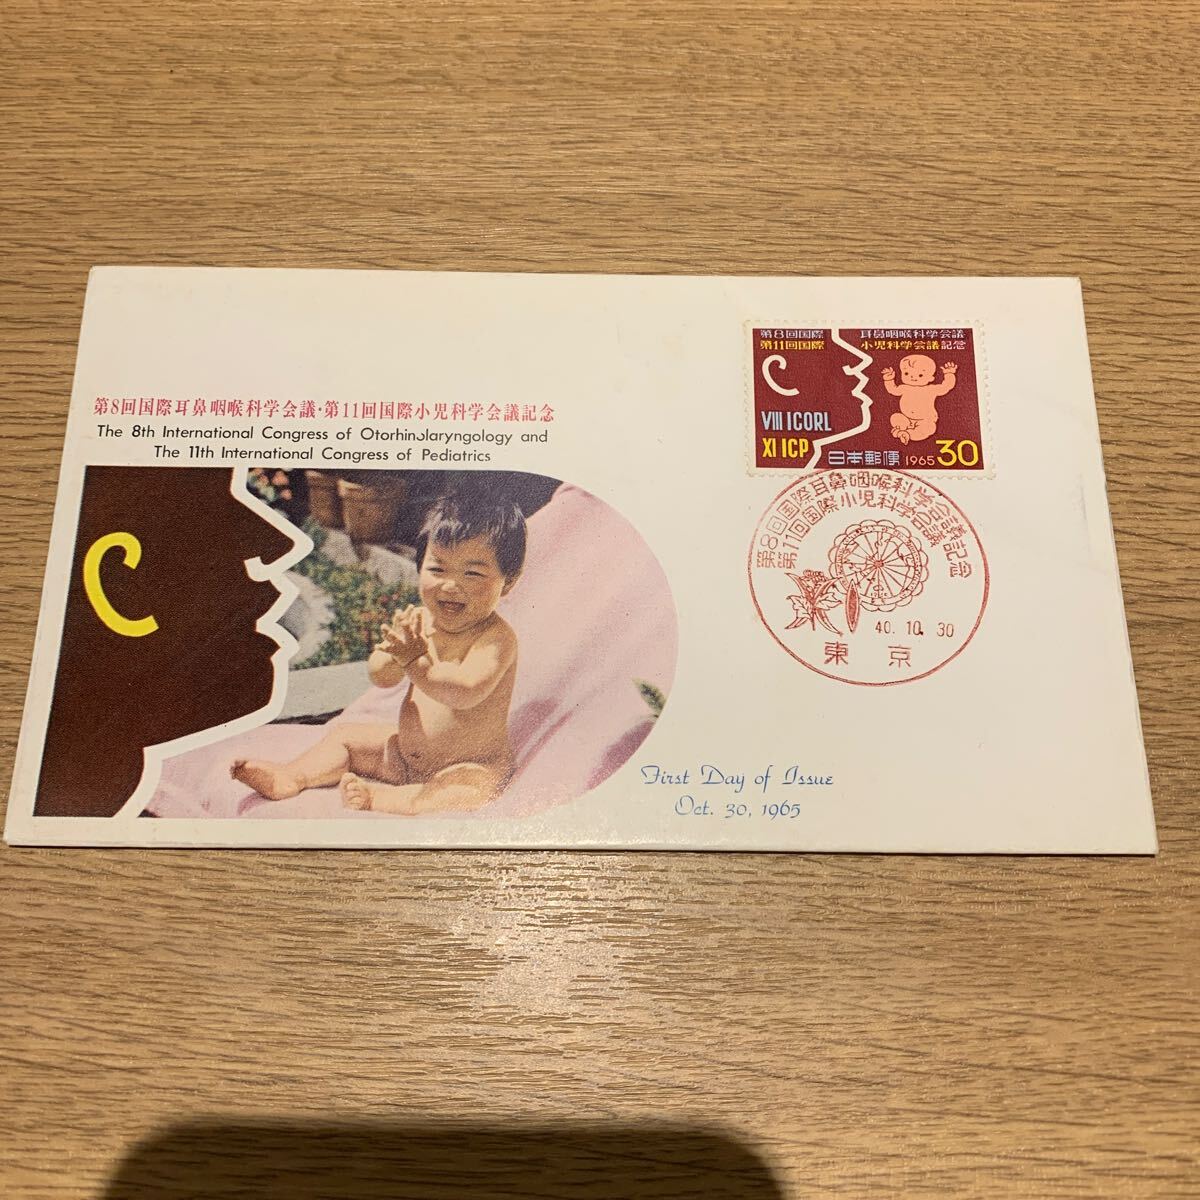 初日カバー 第8回国際耳鼻咽喉科学会議・第11回国際小児科学会議記念郵便切手 昭和40年発行の画像1